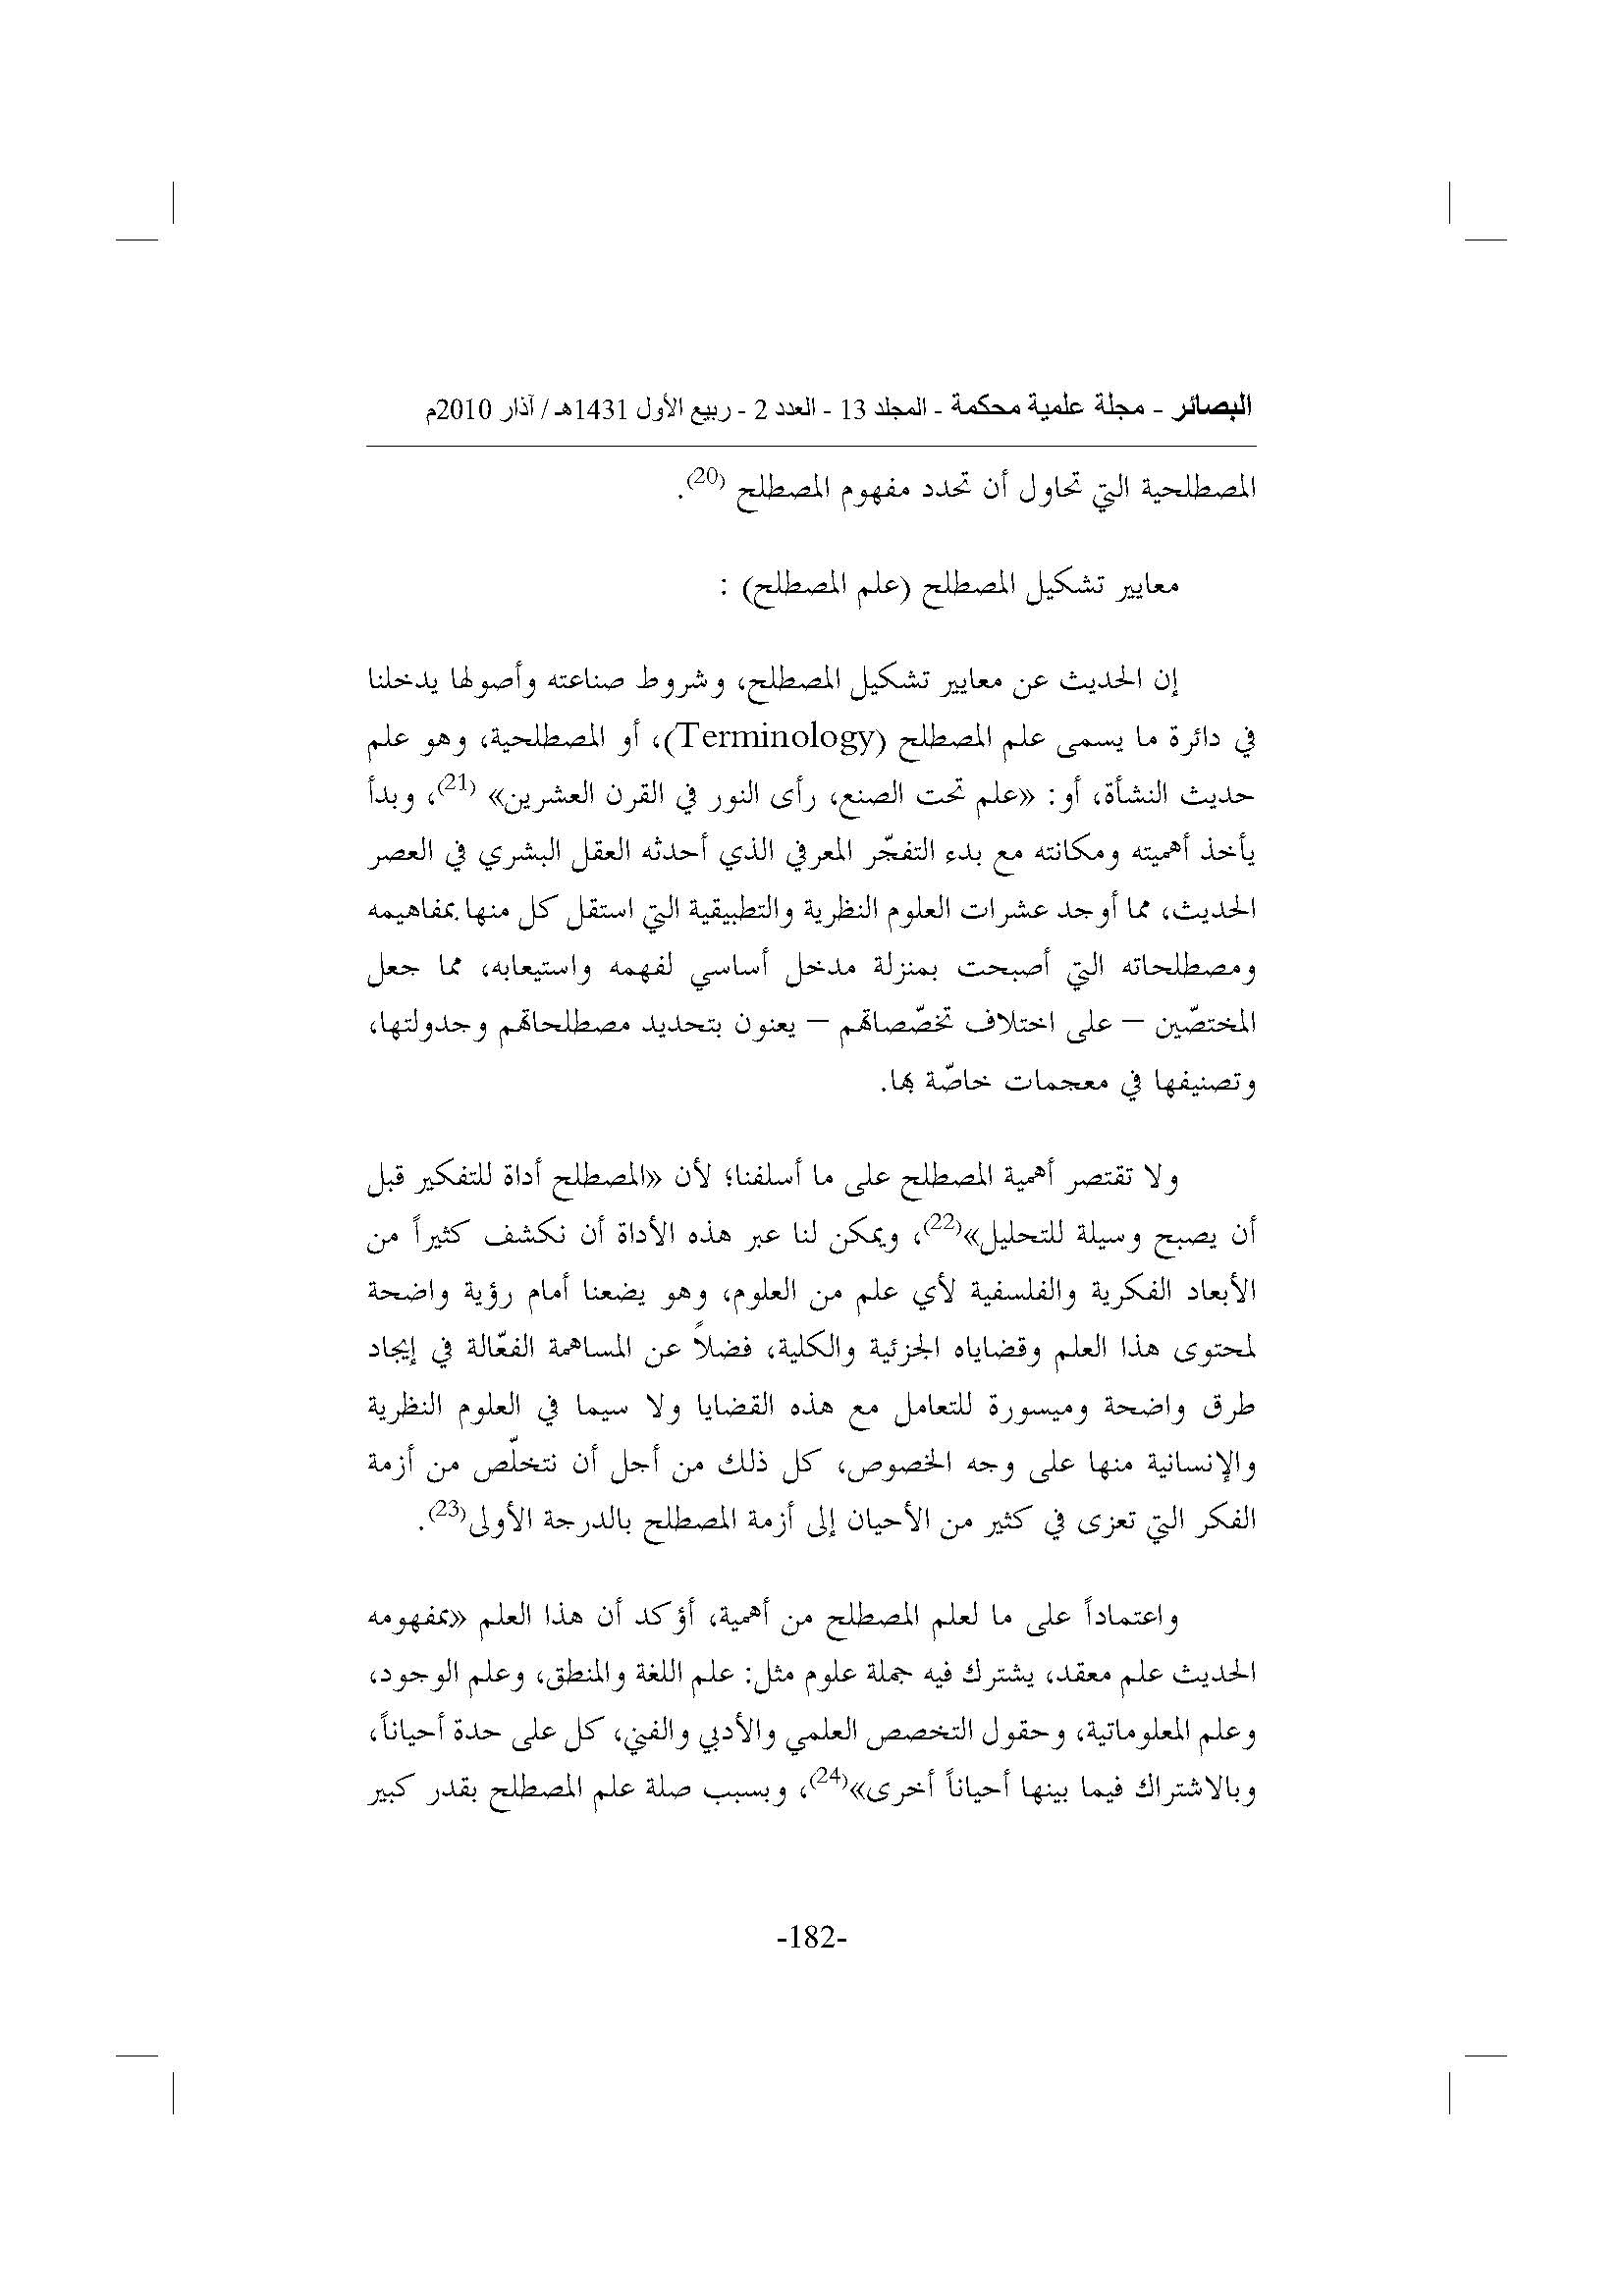 الأرشيف البصائر العدد 2 تاريخ الإصدار 1 مارس 2010 مقالة معايير تشكيل المصطلح وإشكالاته في النقد العربي القديم